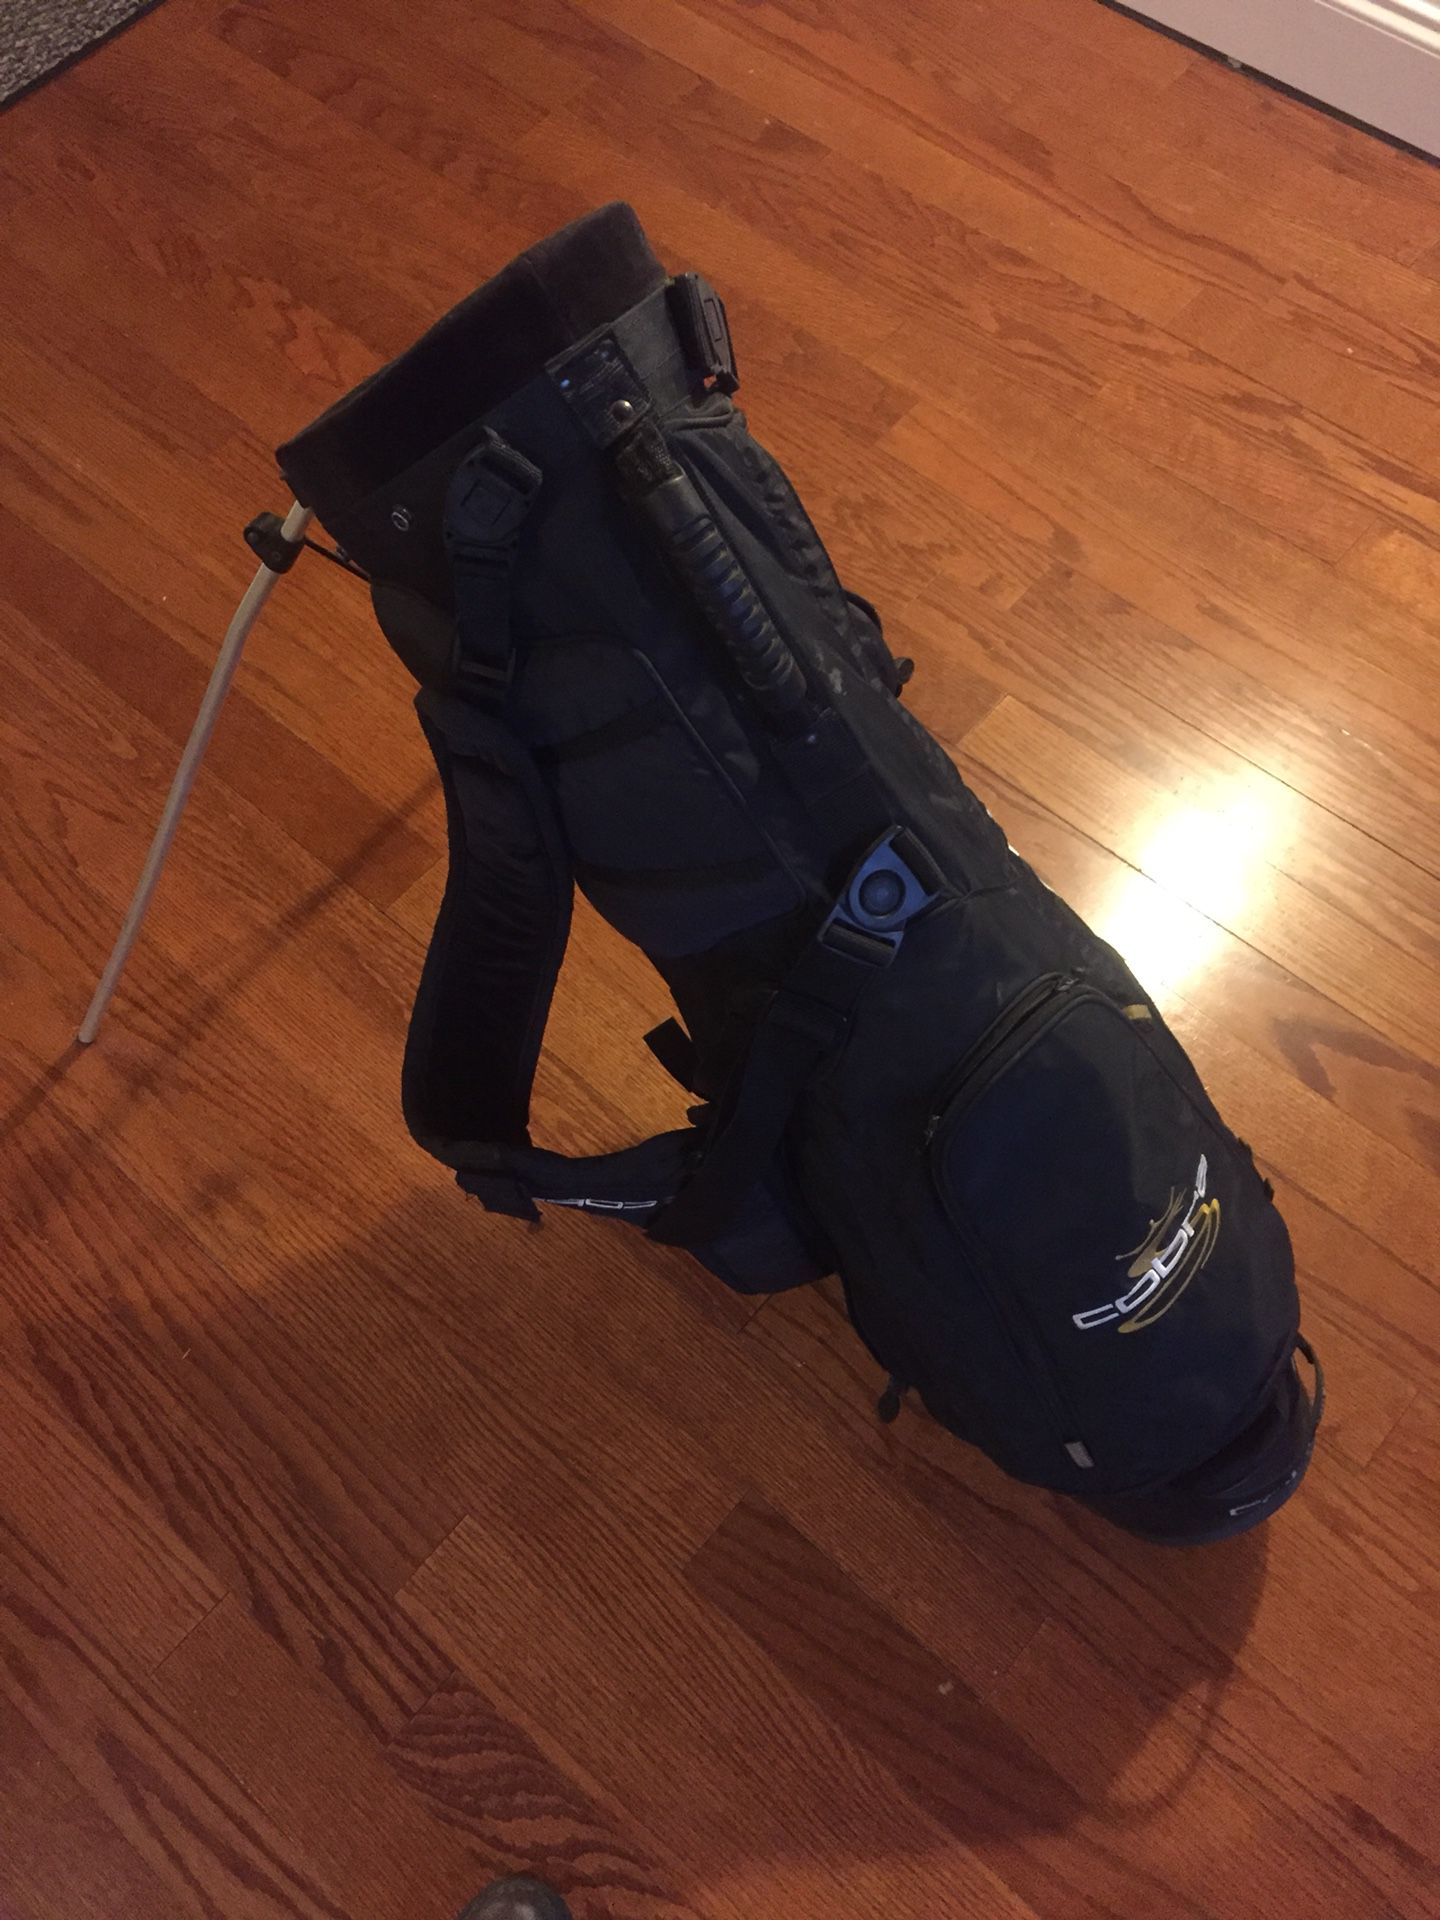 Cobra golf bag